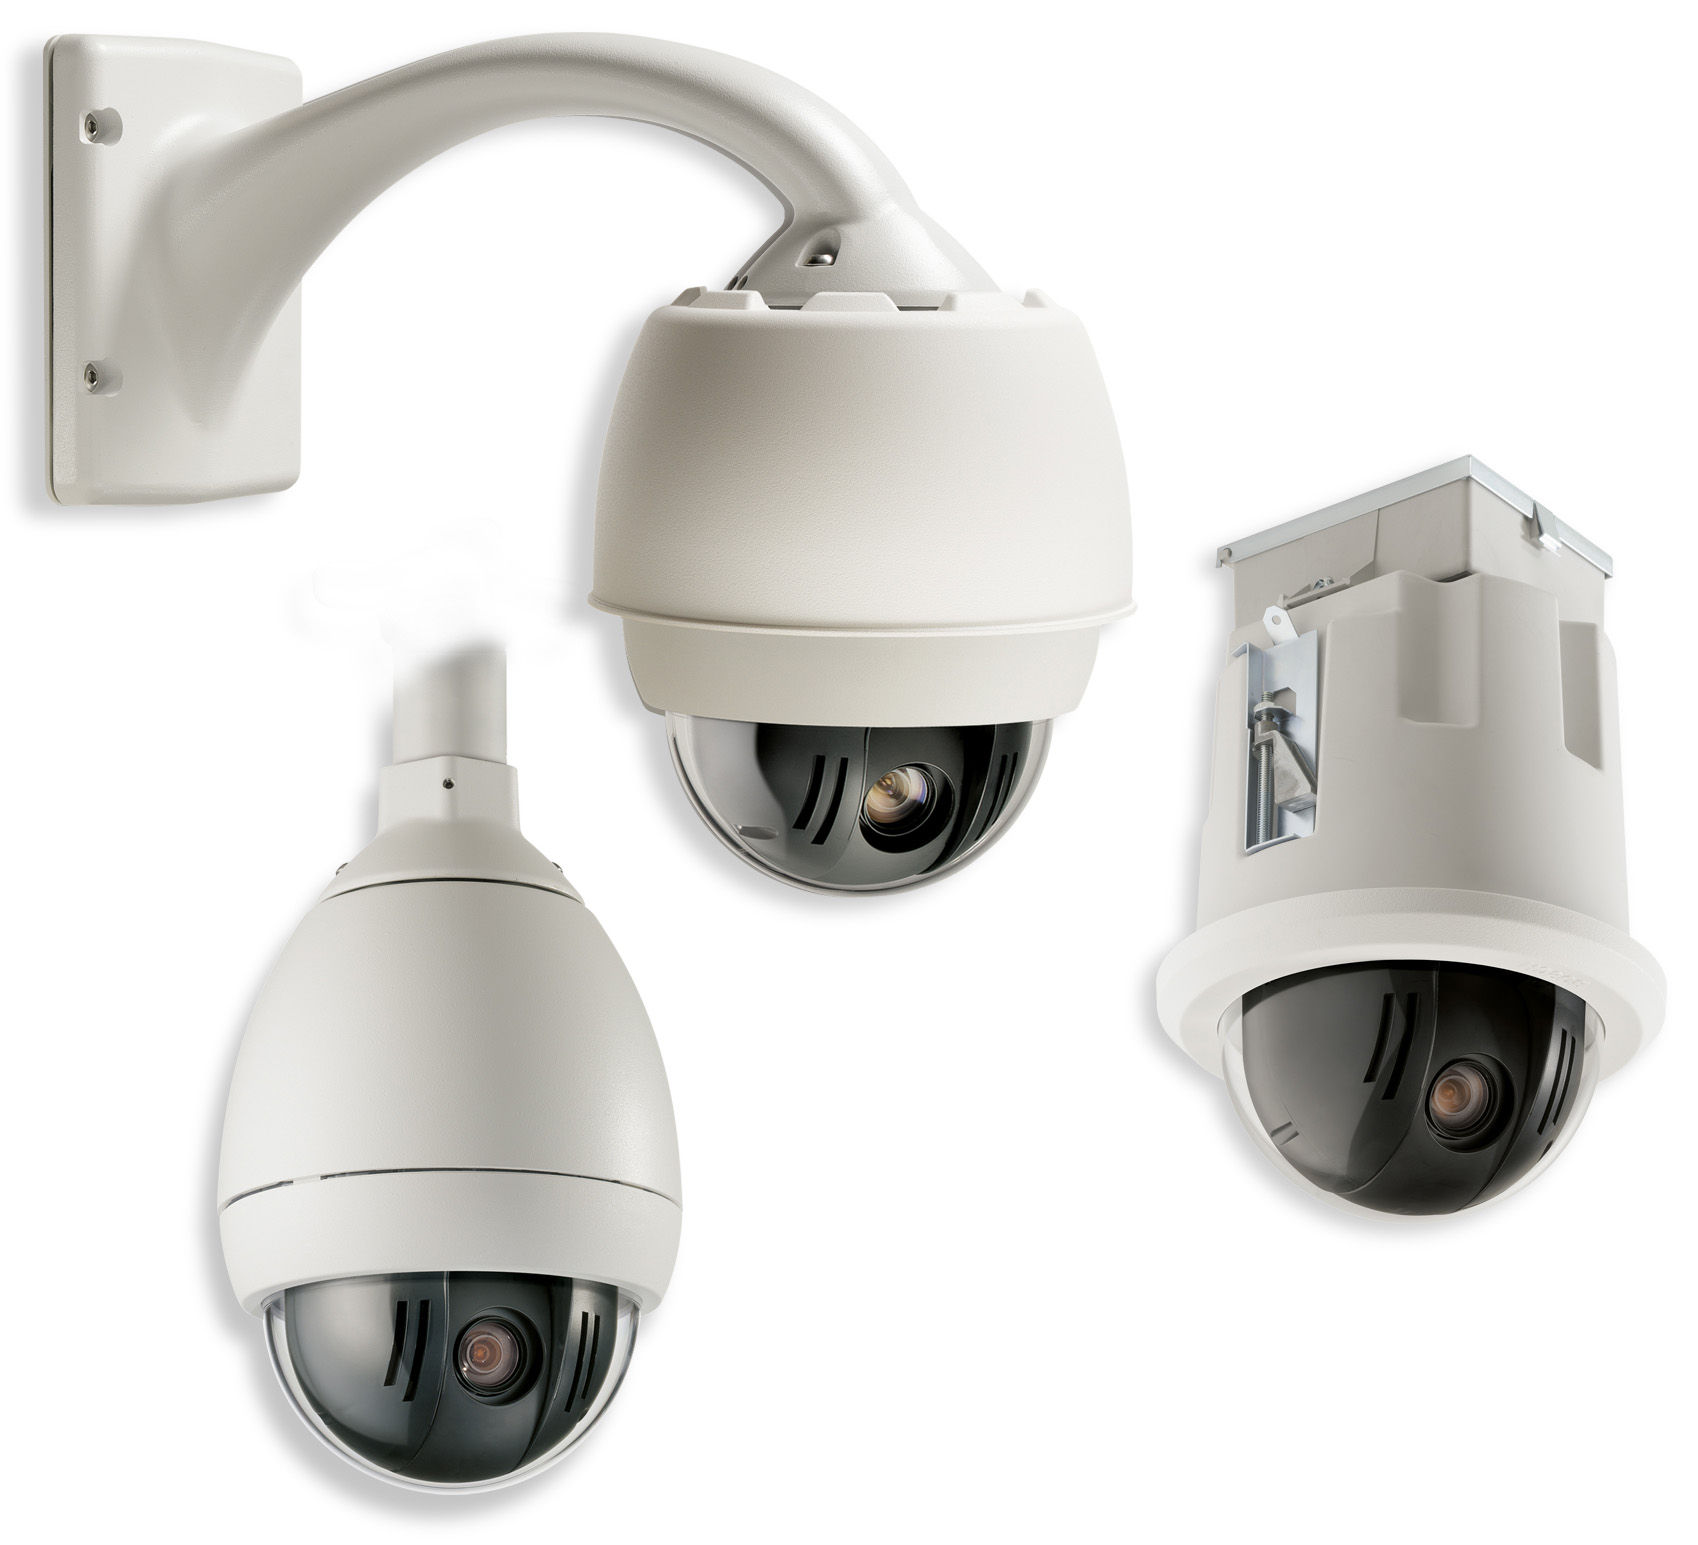 CCTV Kamerový systém PTZ řady AutoDome 200 Kamerový systém PTZ řady AutoDome 200 Úsporný vysokorychlostní systém PTZ s kopulovitým krytem Plně výměnné řídicí jednotky, kamery, kryty, komunikační